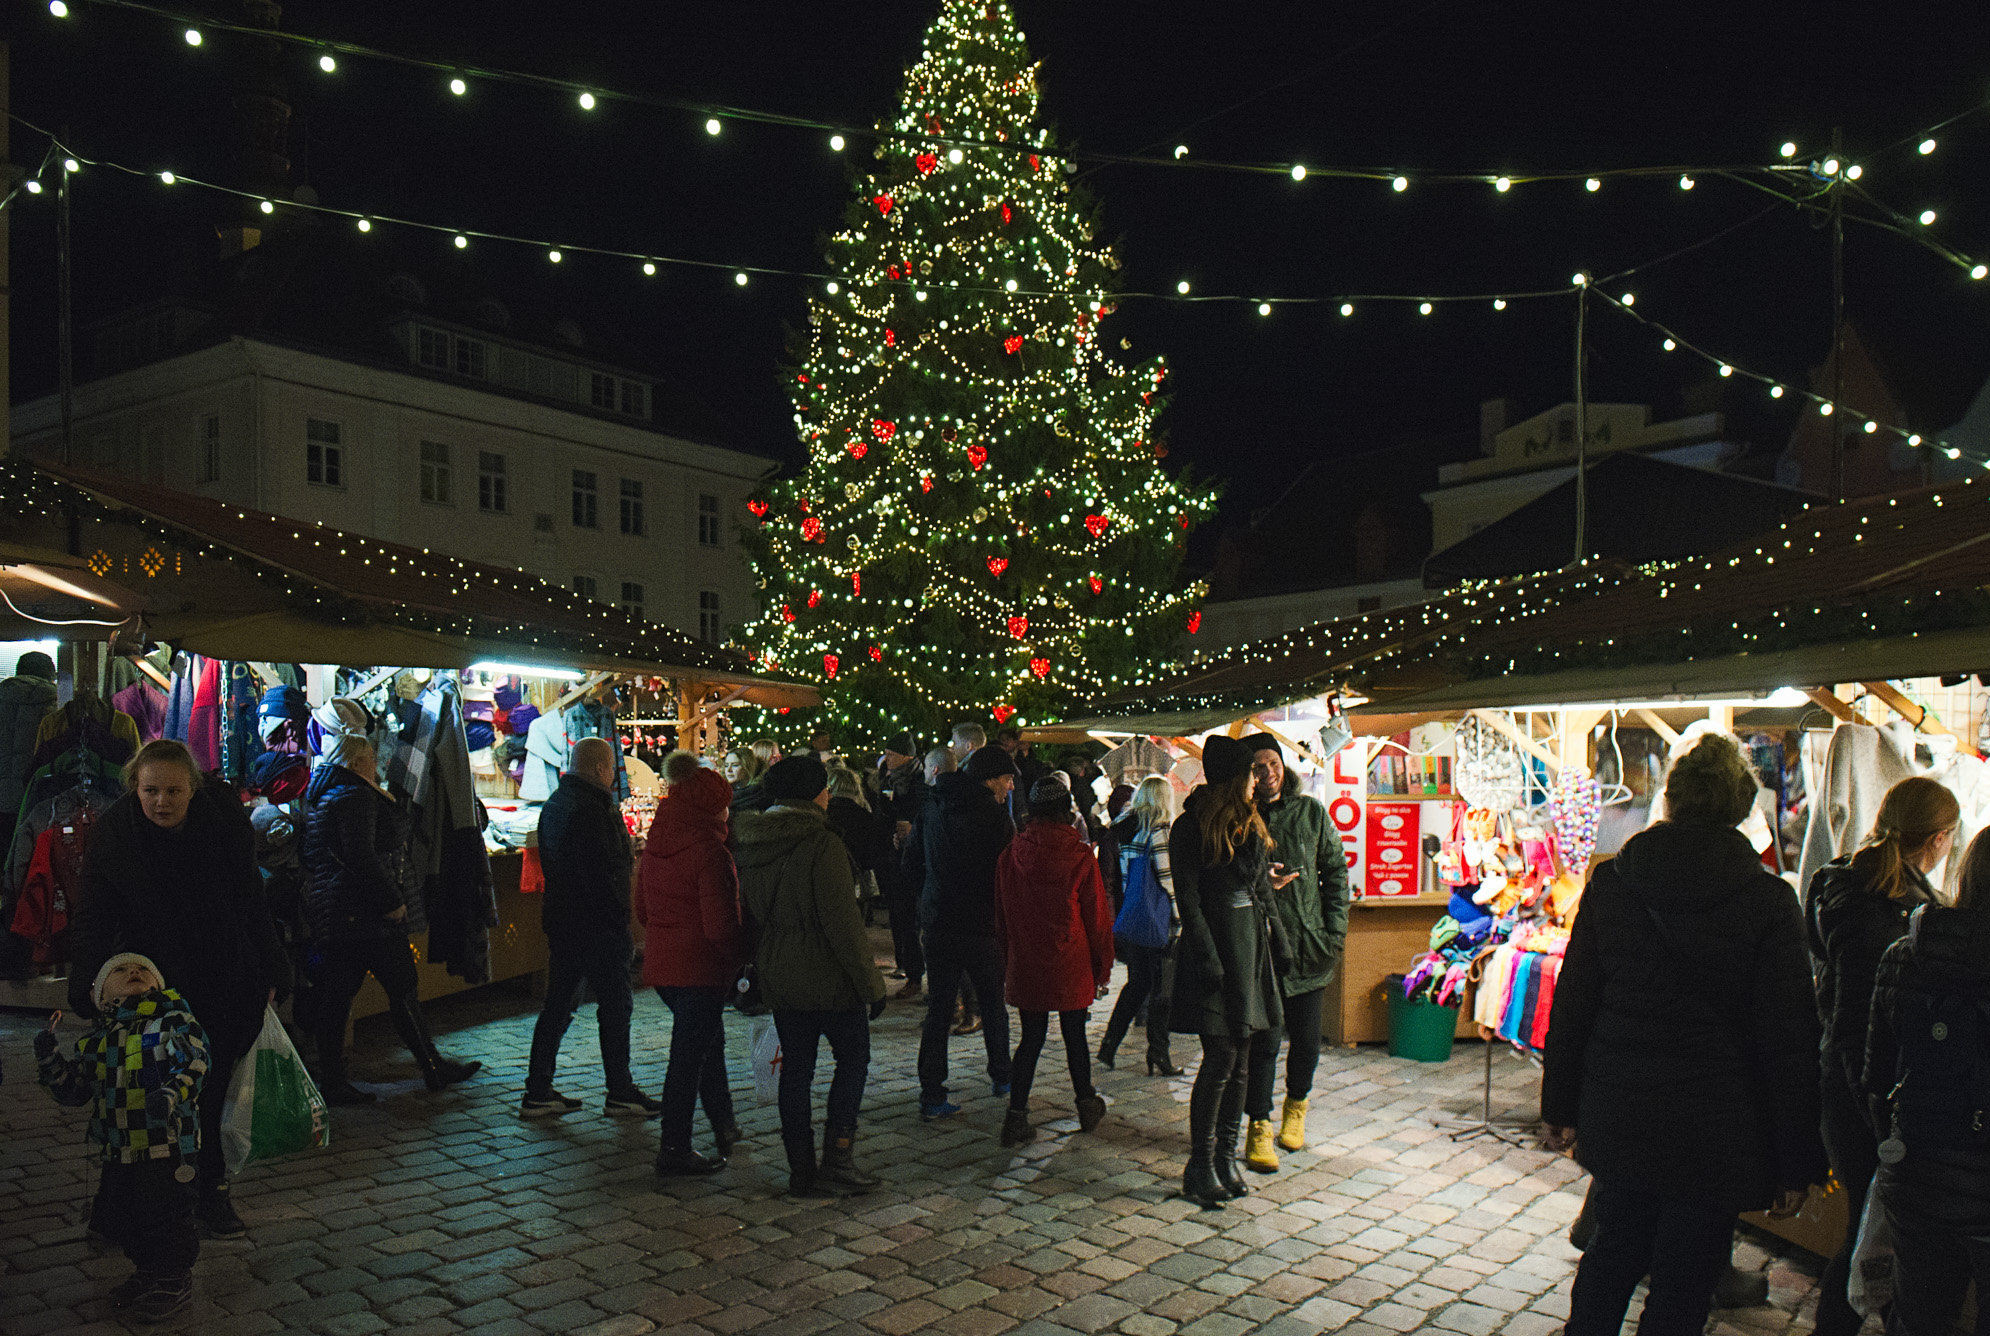 Рождественская ярмарка на Ратушной площади Таллинна